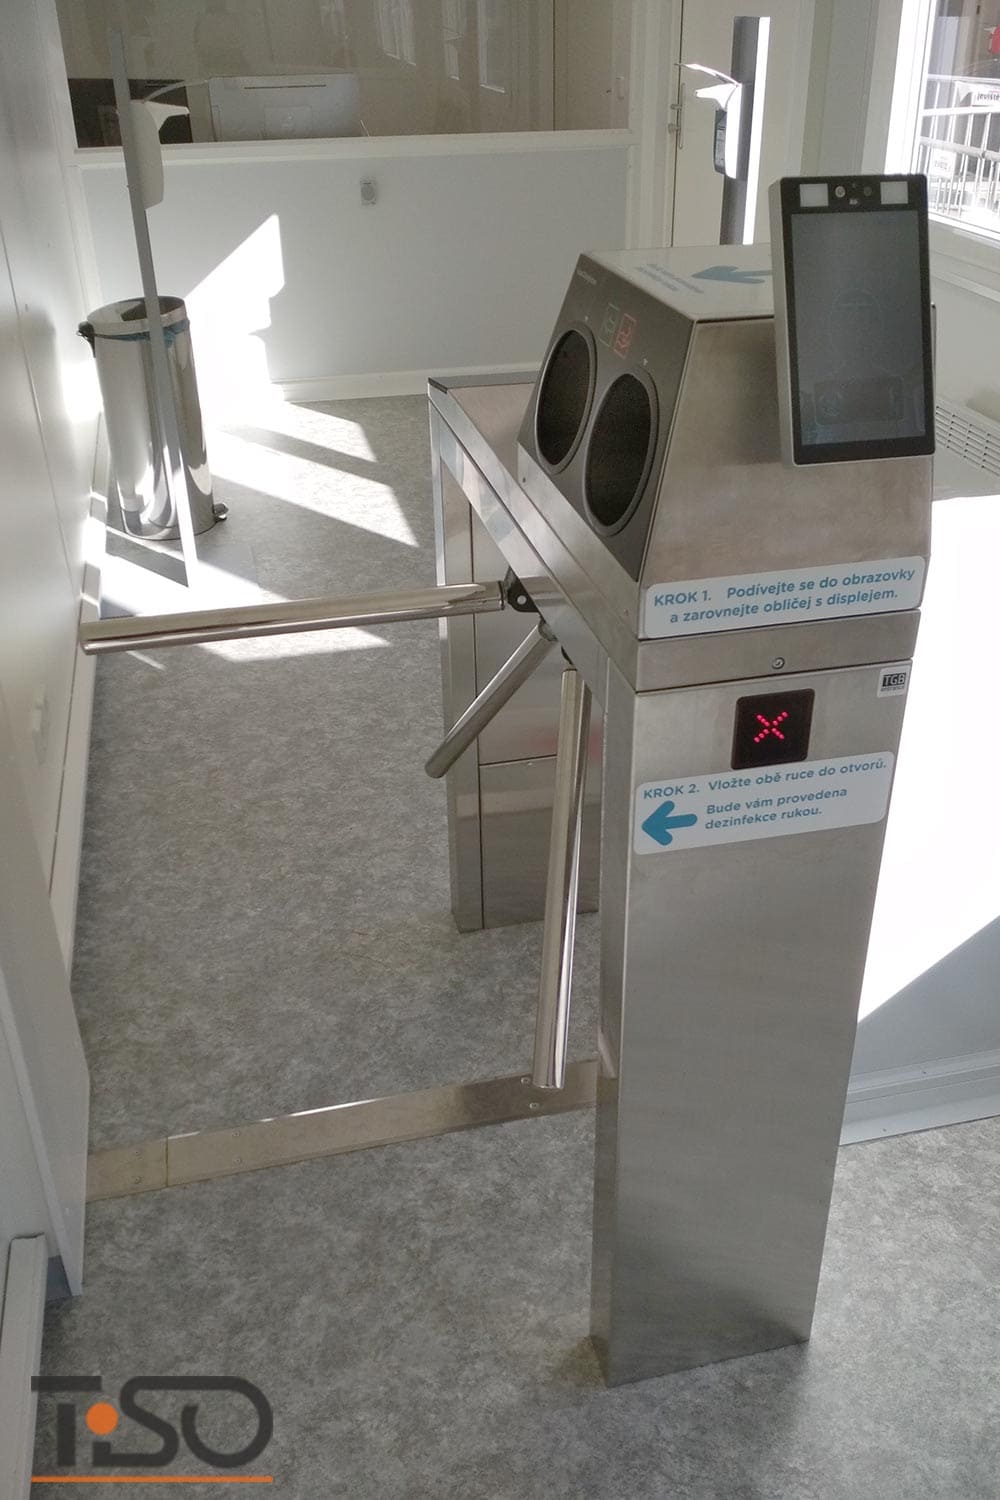 Twix-M y sistema automático de desinfección de manos, hospital Horovice, República Checa